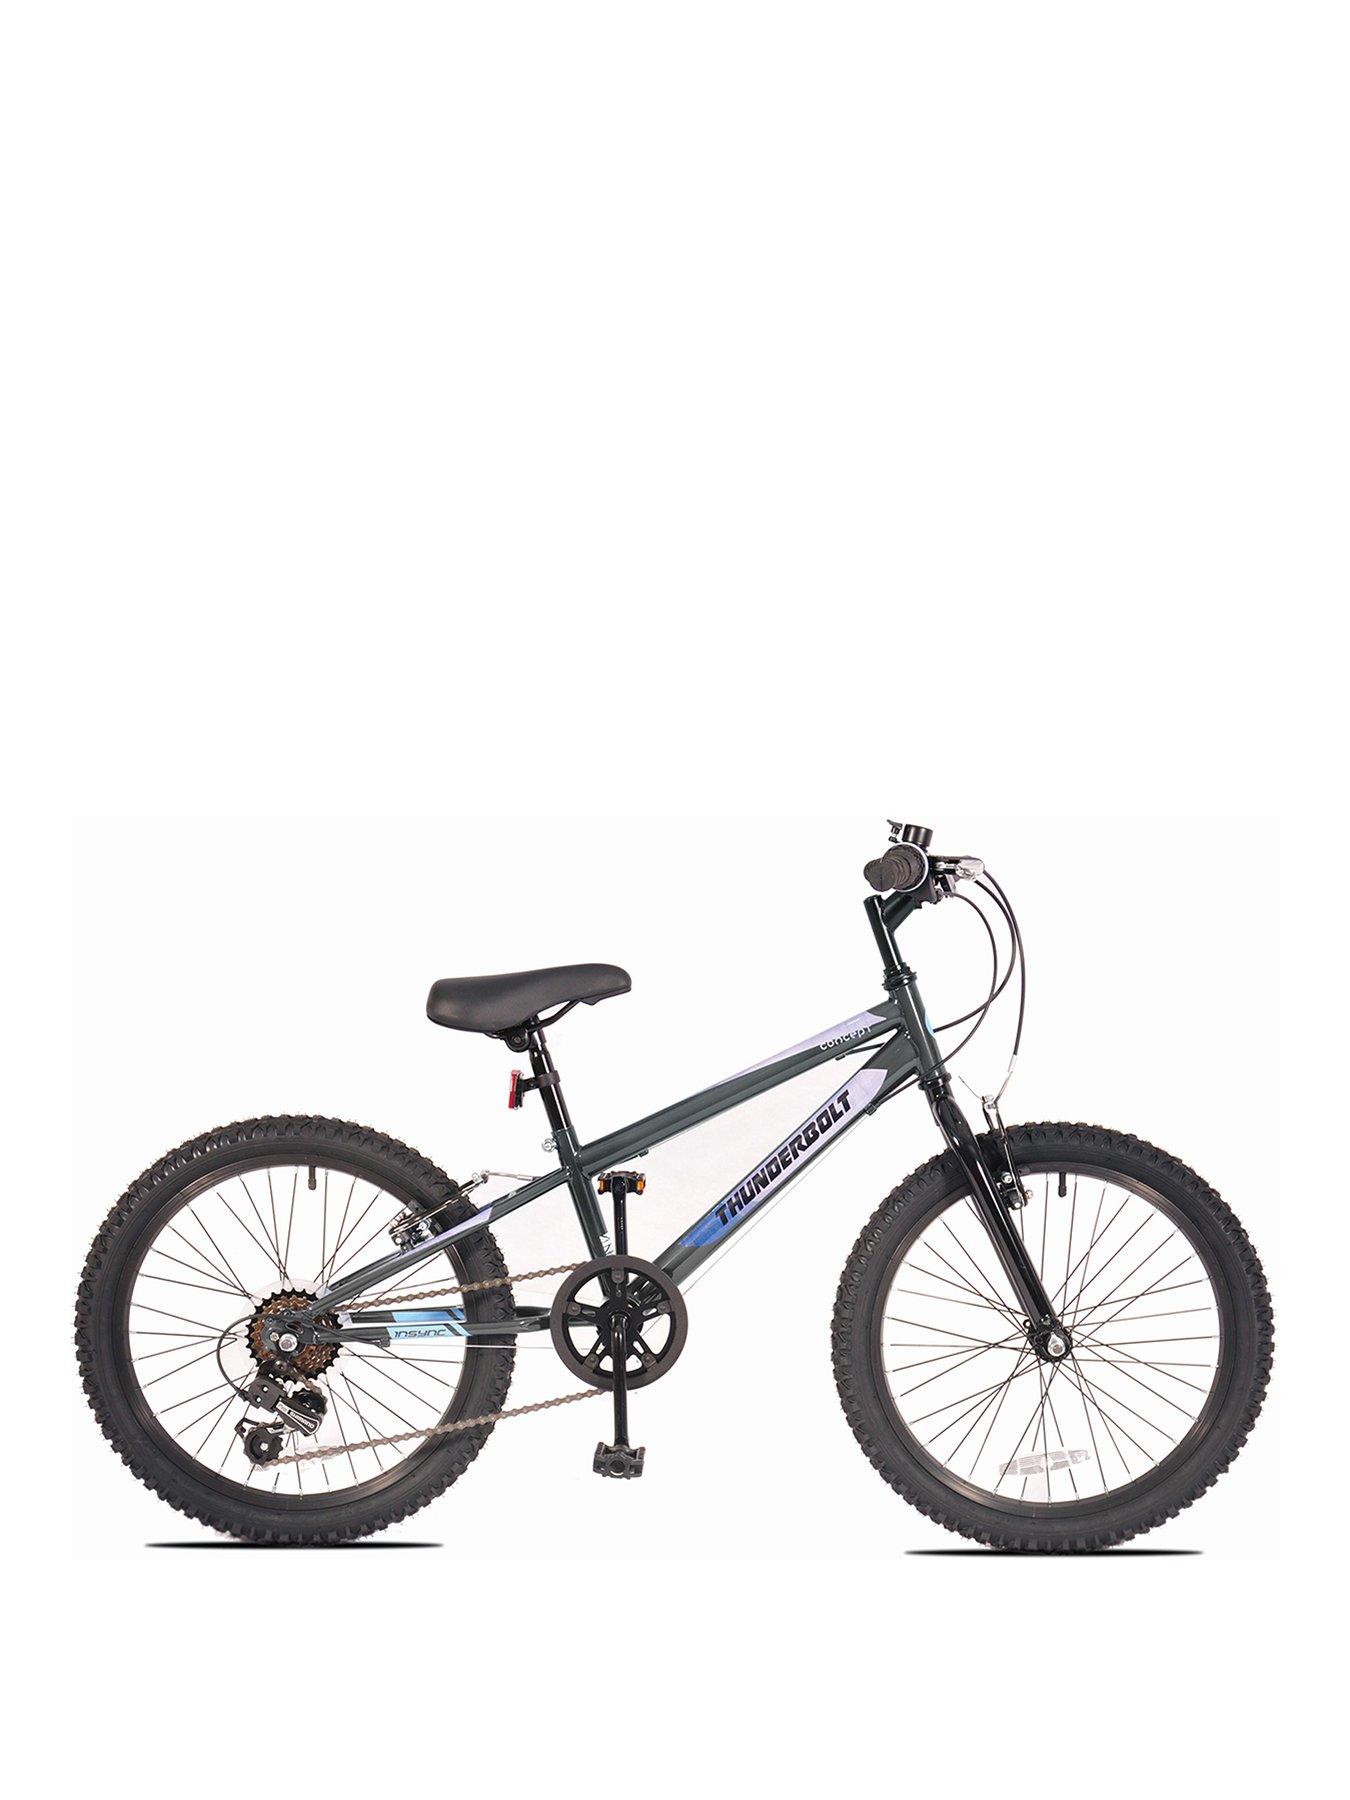 18 inch bike blue